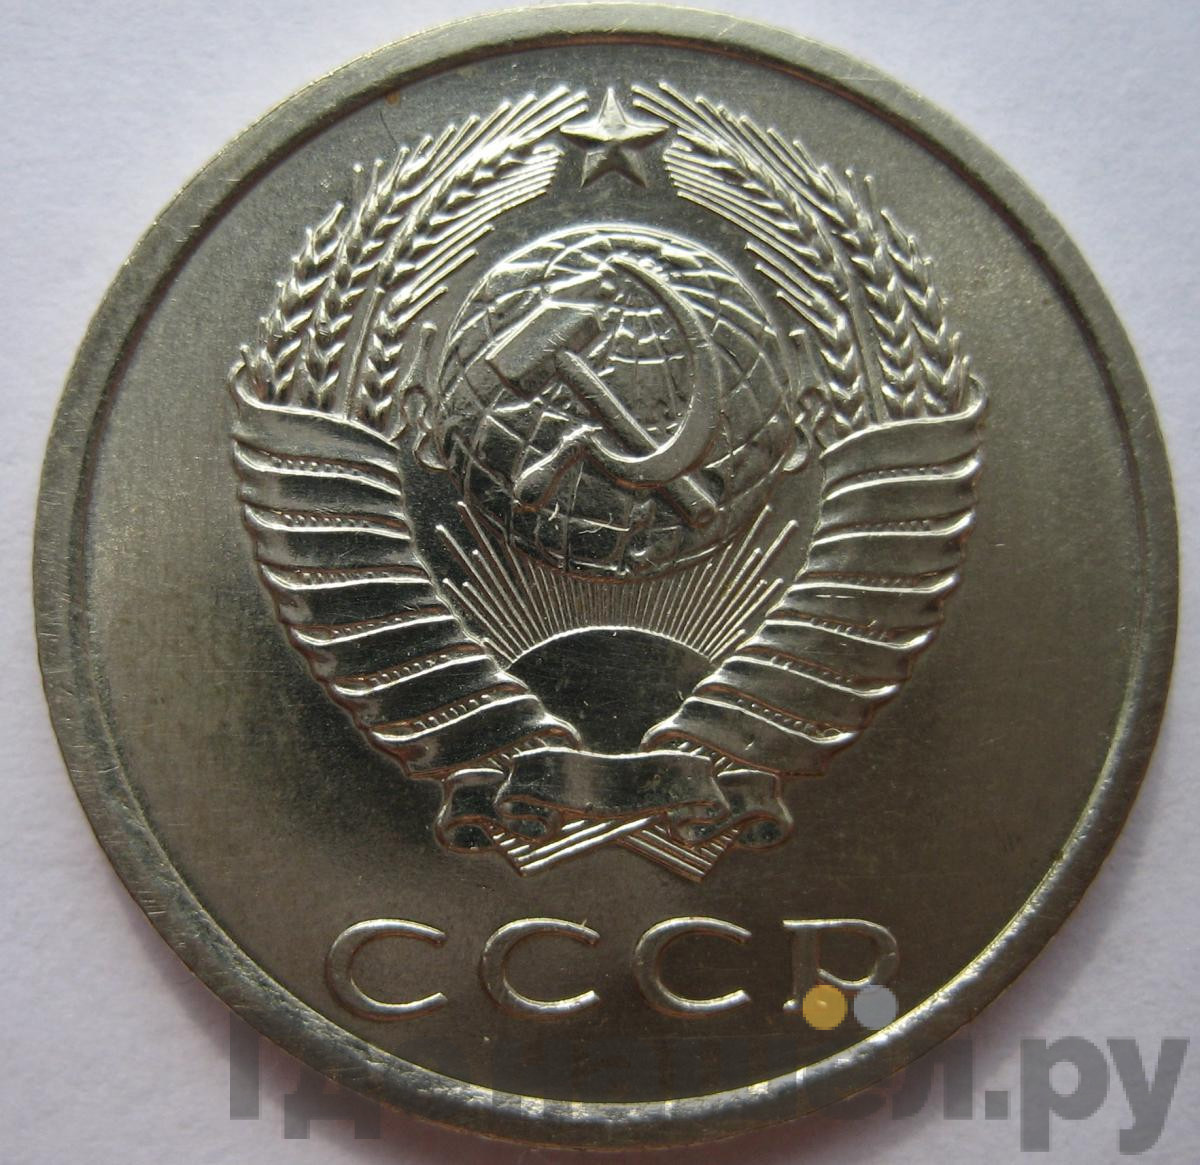 Годовой набор 1976 года ЛМД Госбанка СССР